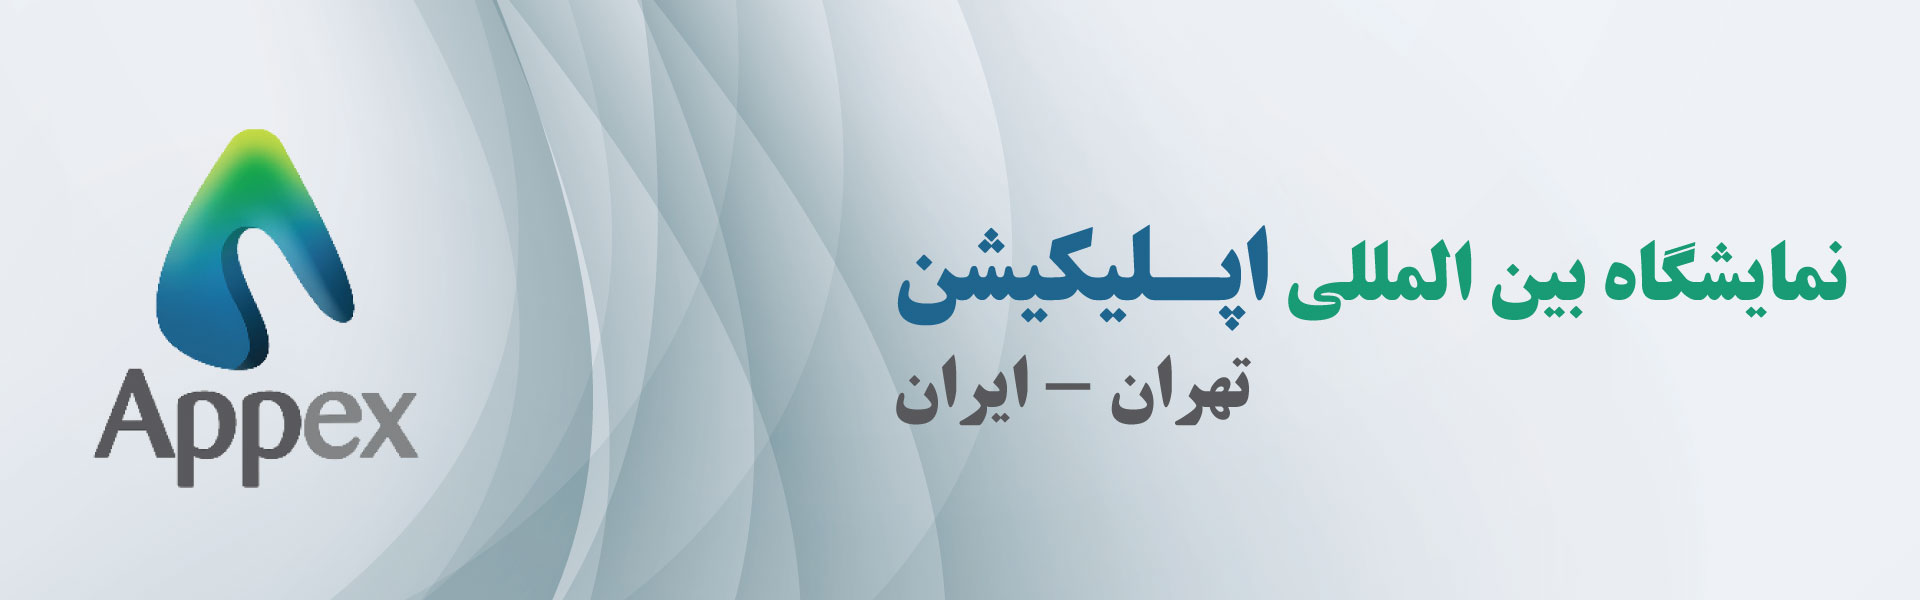 نمایشگاه بین المللی اپلیکیشن (Appex) تهران ایران مرکز نمایشگاهی سئول